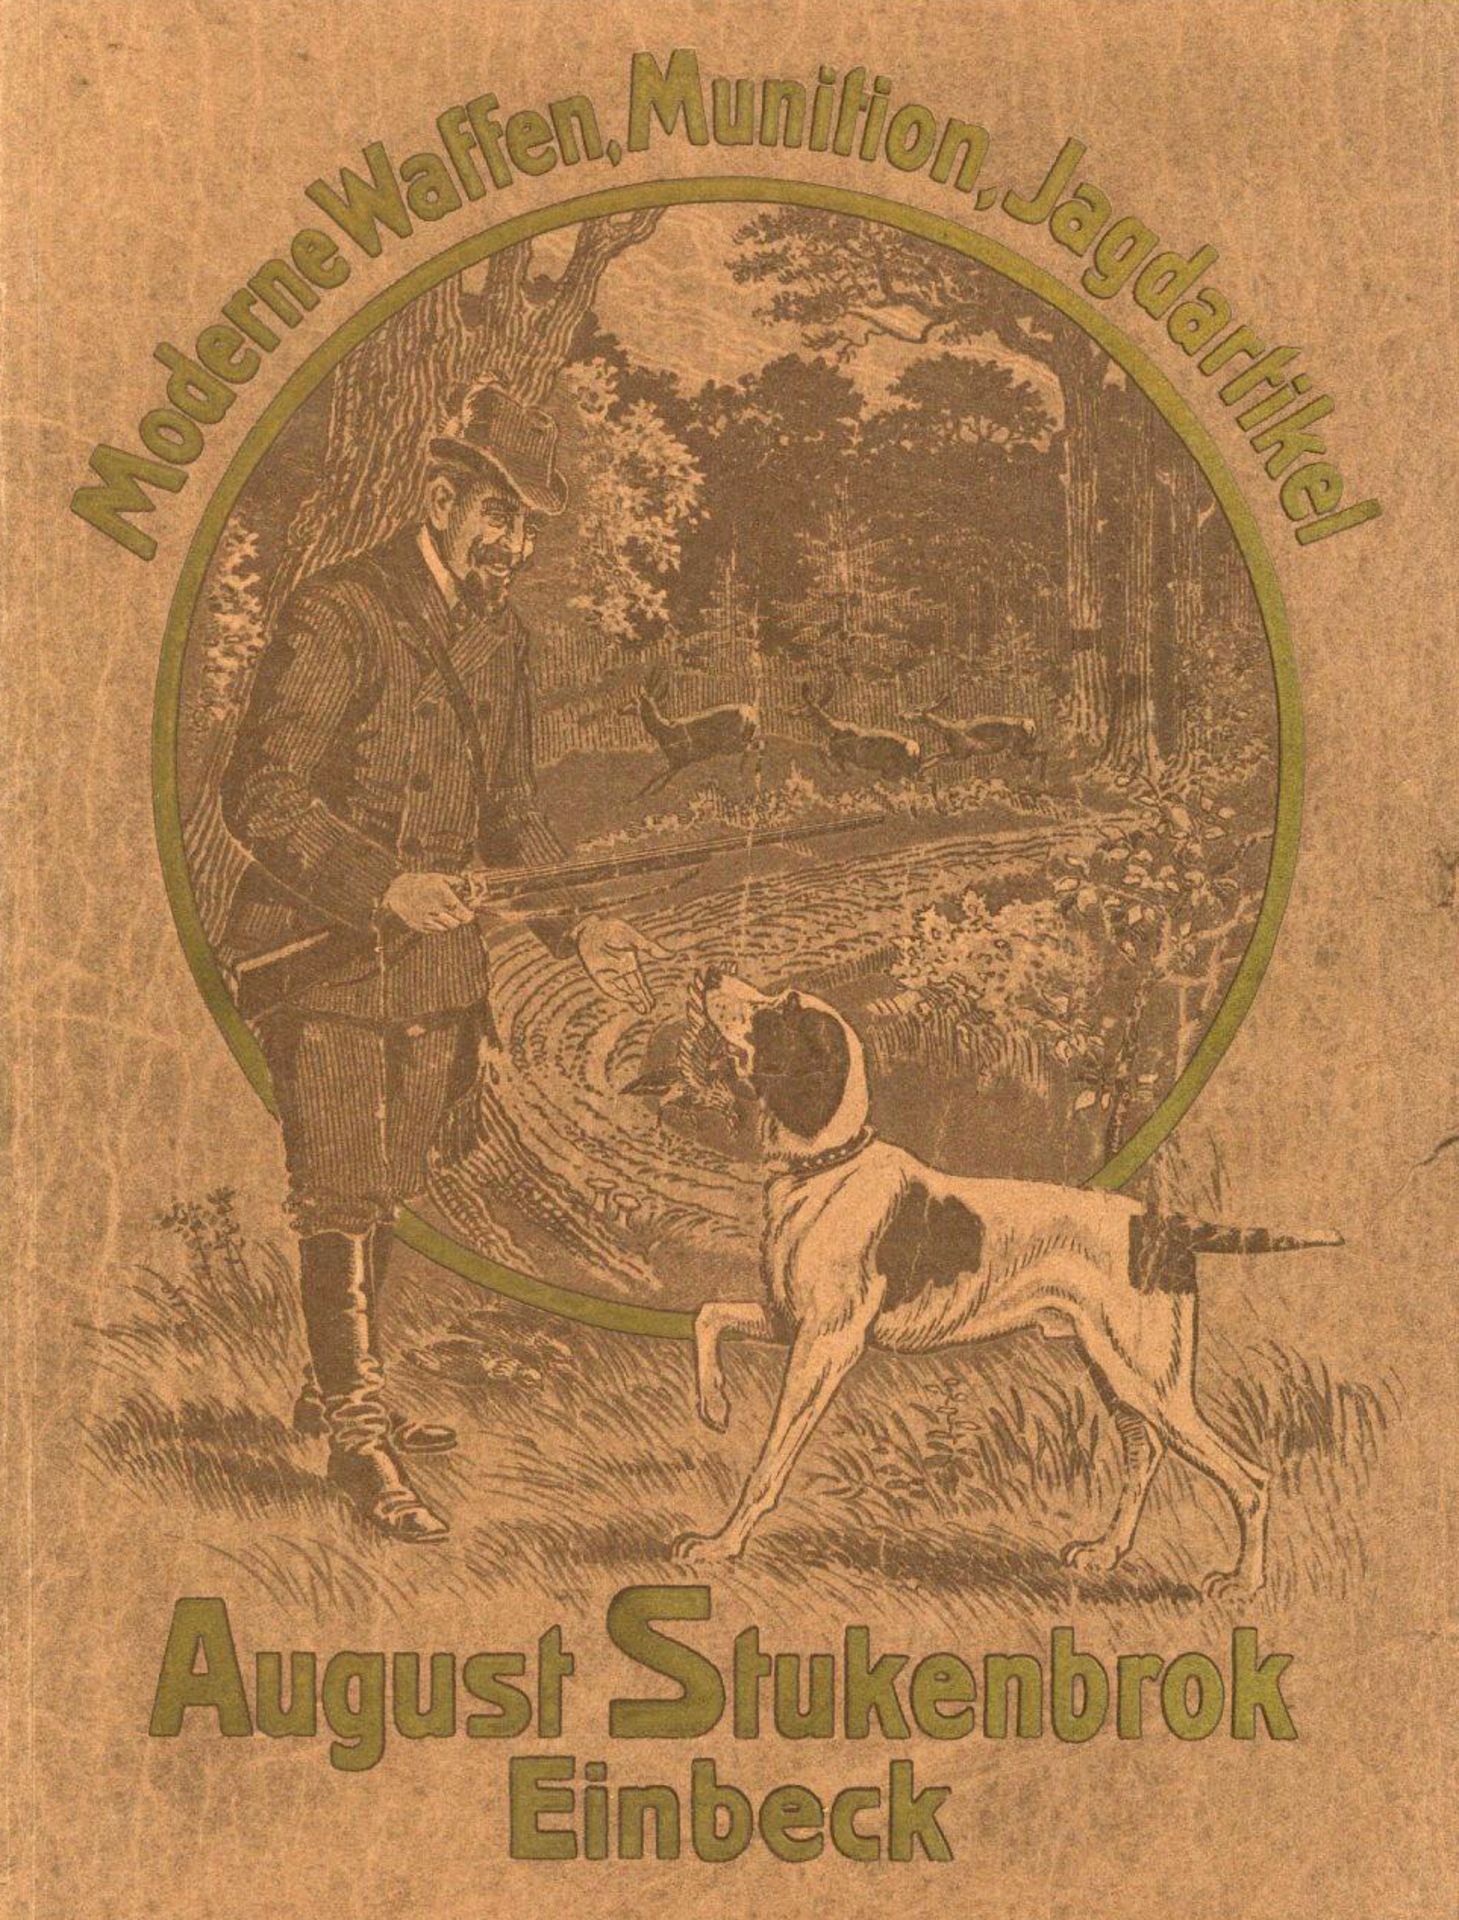 Jagd Waffen Buch Moderne Waffen, Munition, Jagsartikel von Stukenbrok, August 1912, Verlag